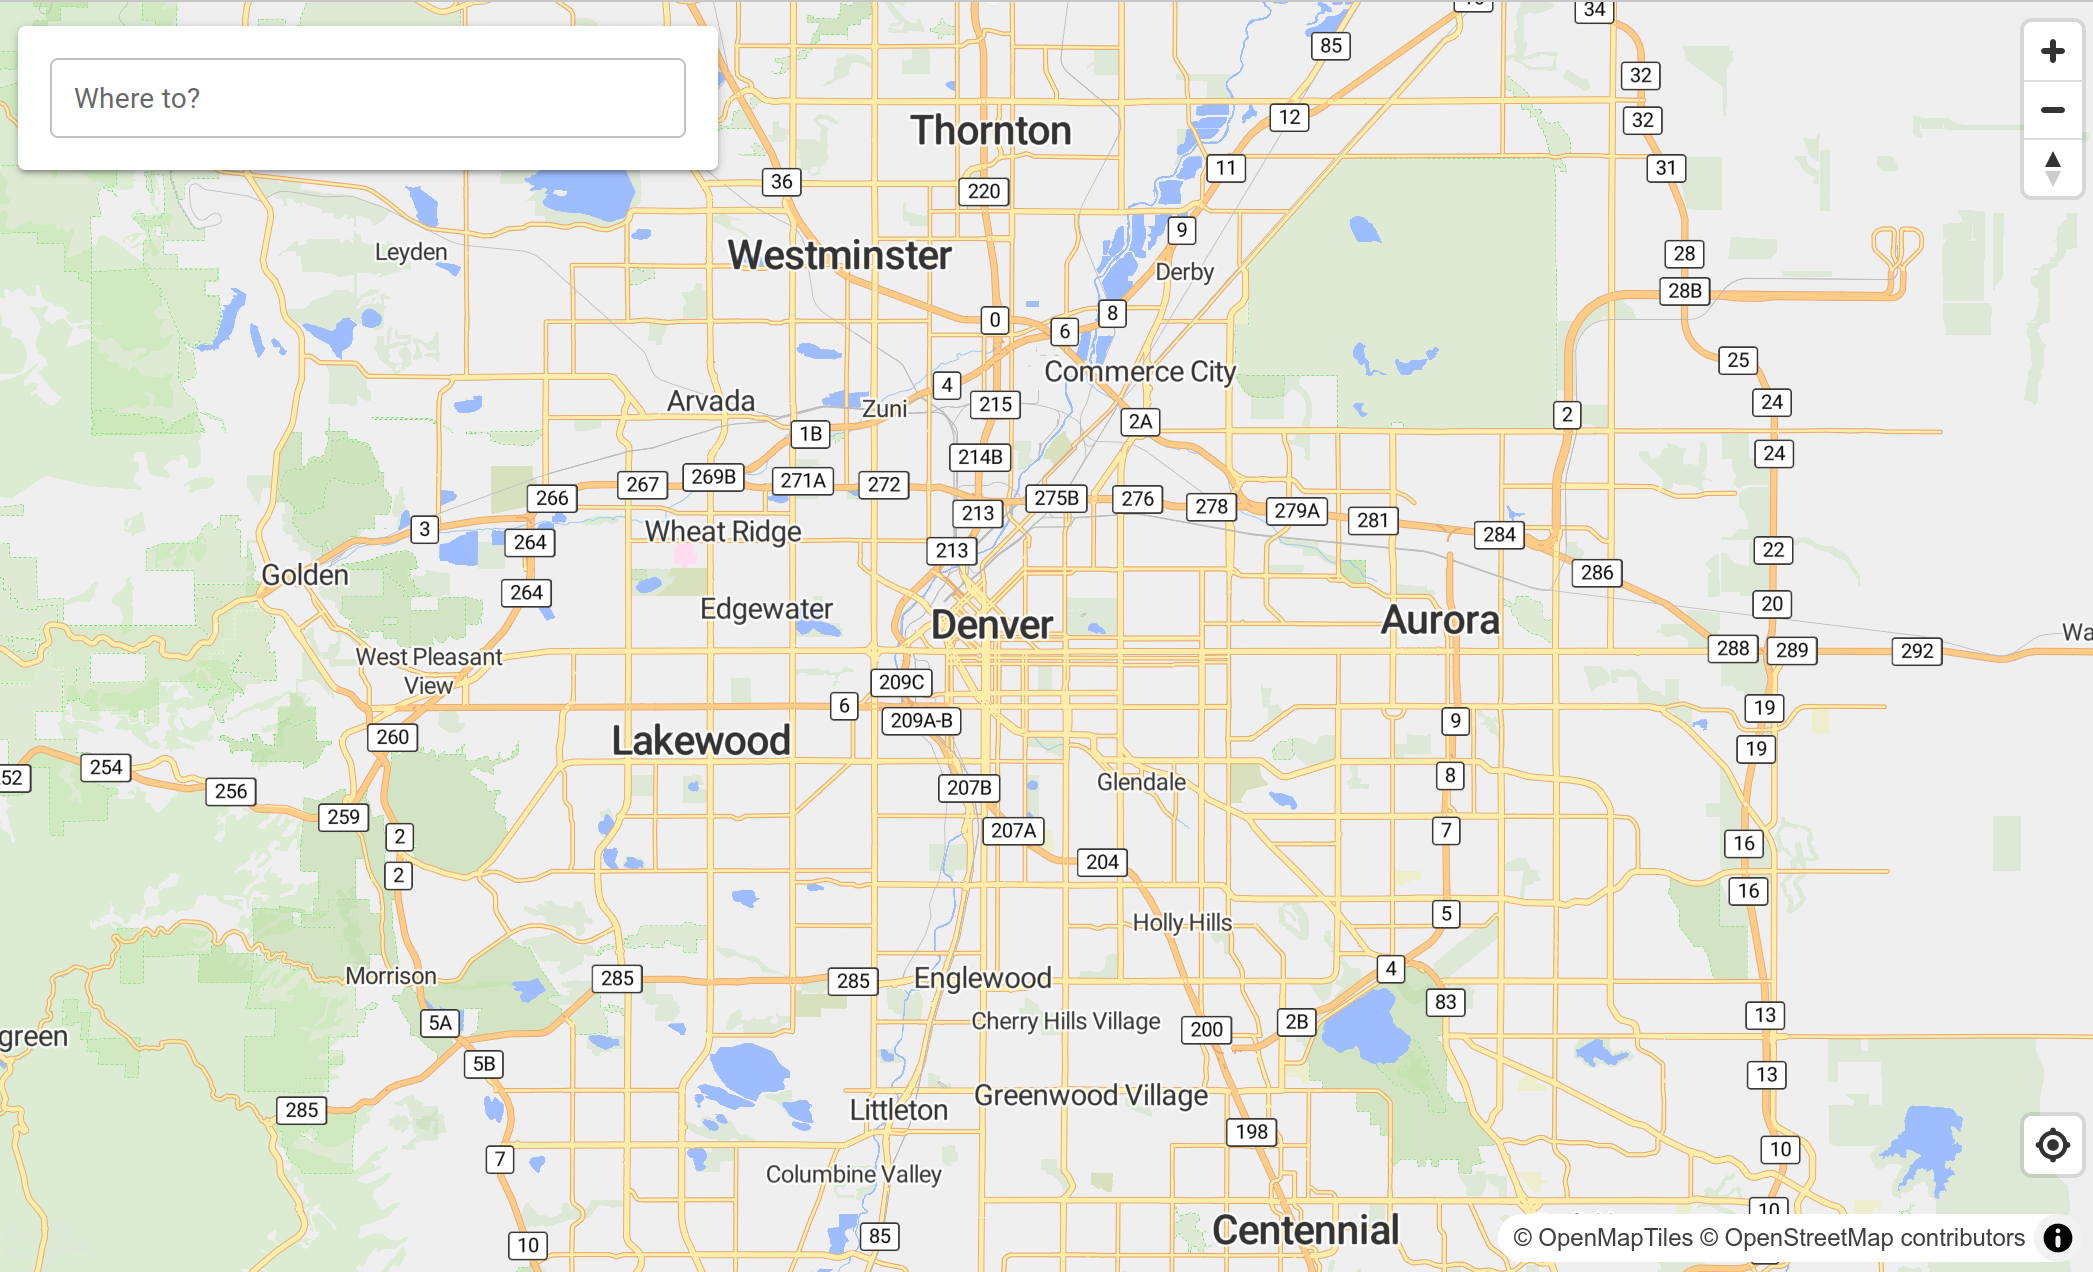 A screenshot of a map showing Denver